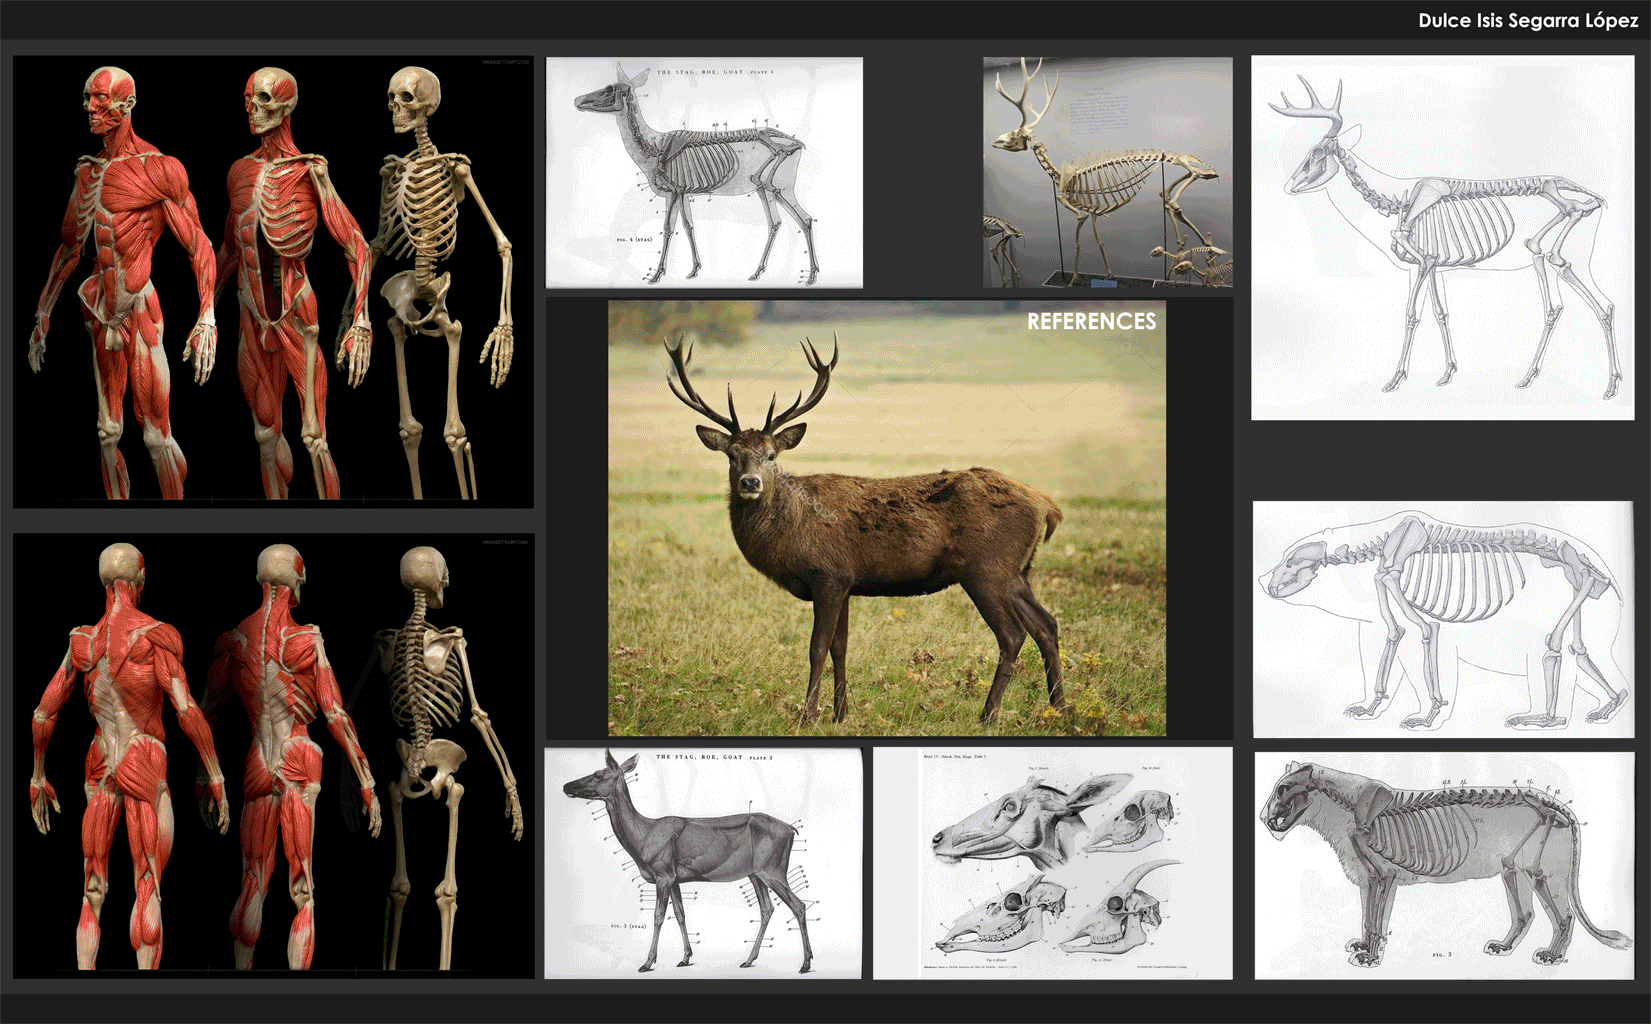 deer anatomy